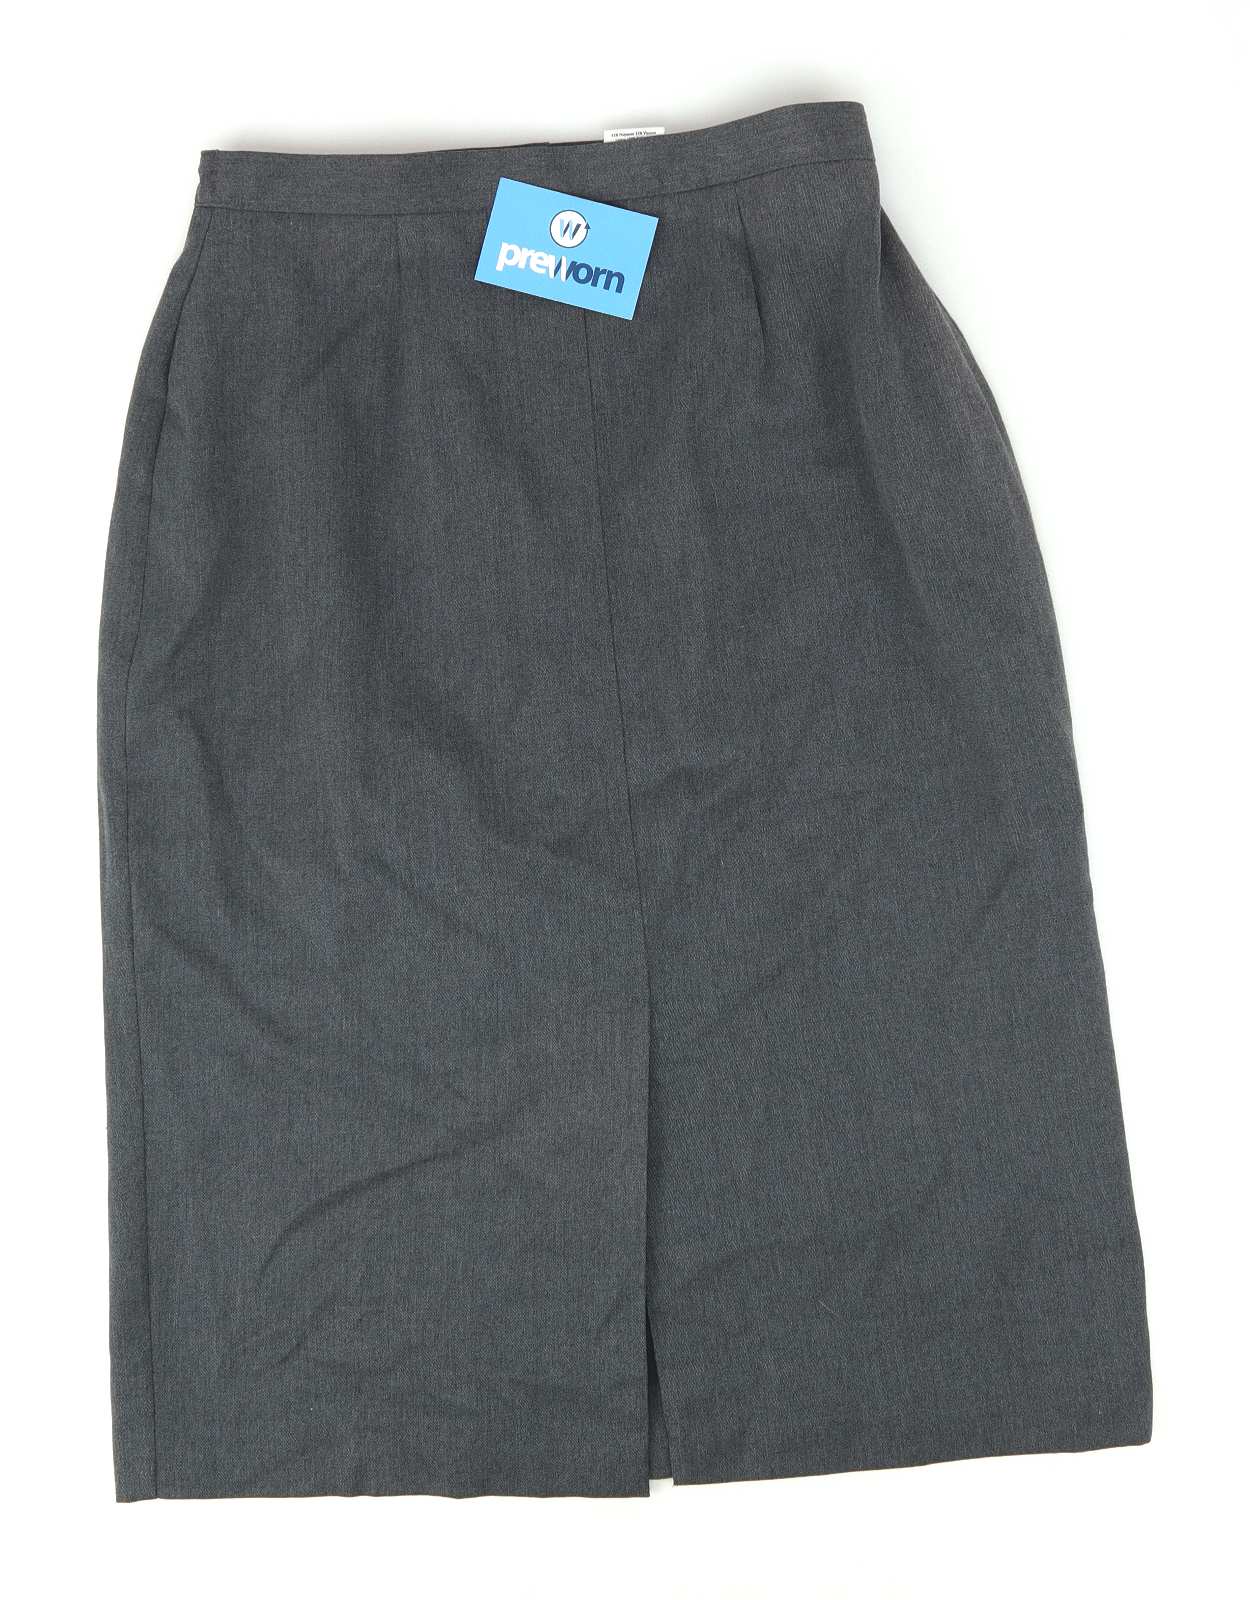 Berkertex Womens Size 14 Grey Split Divided Skirt (Regular)